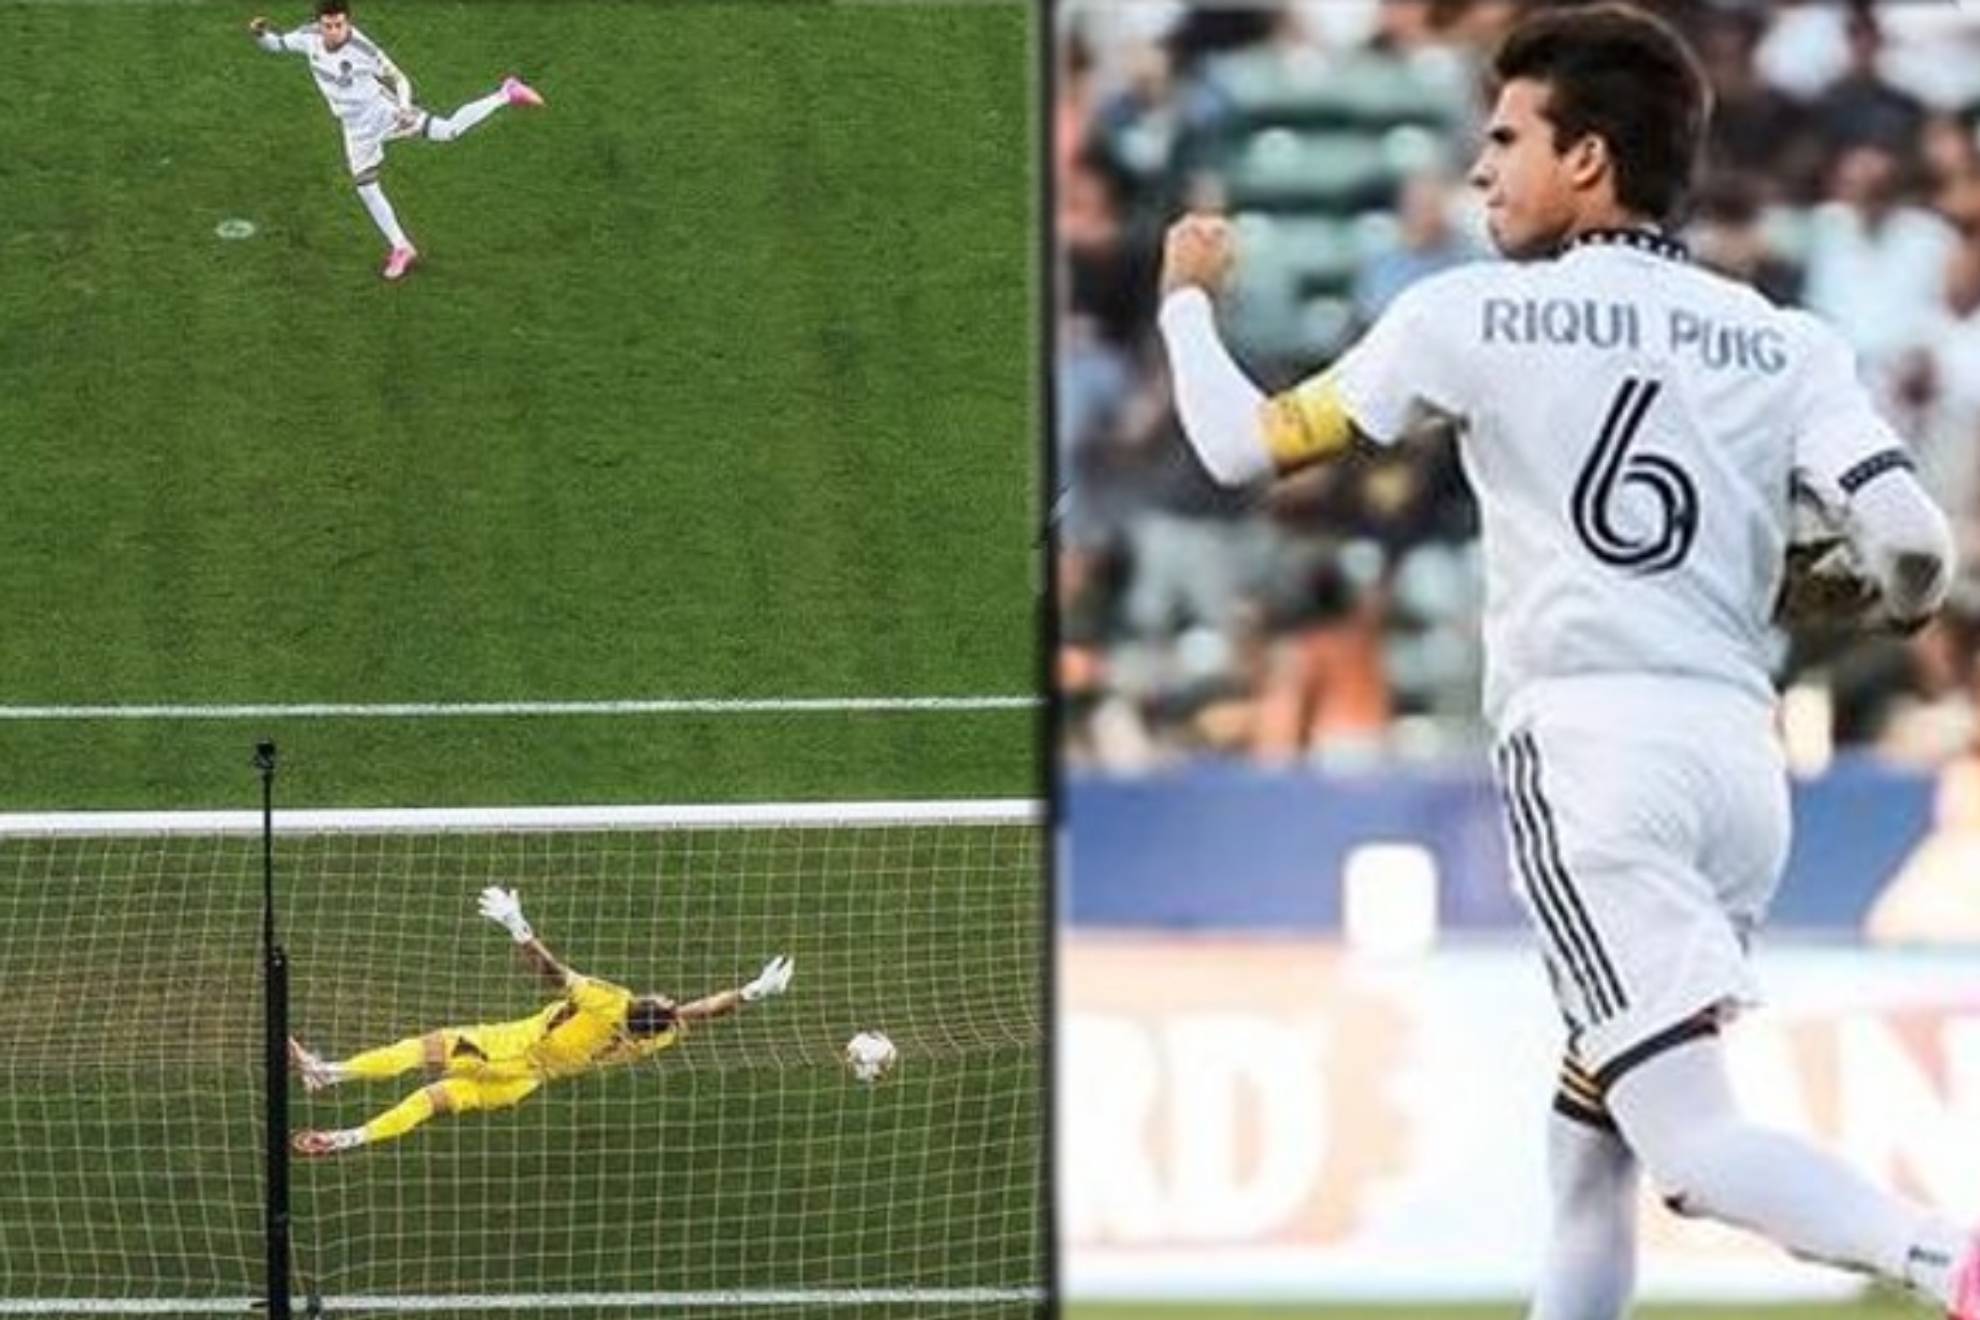 Riqui Puig, la joya del Barça que desechó Xavi, brilla en la MLS: nuevo gol y determinante con los Galaxy